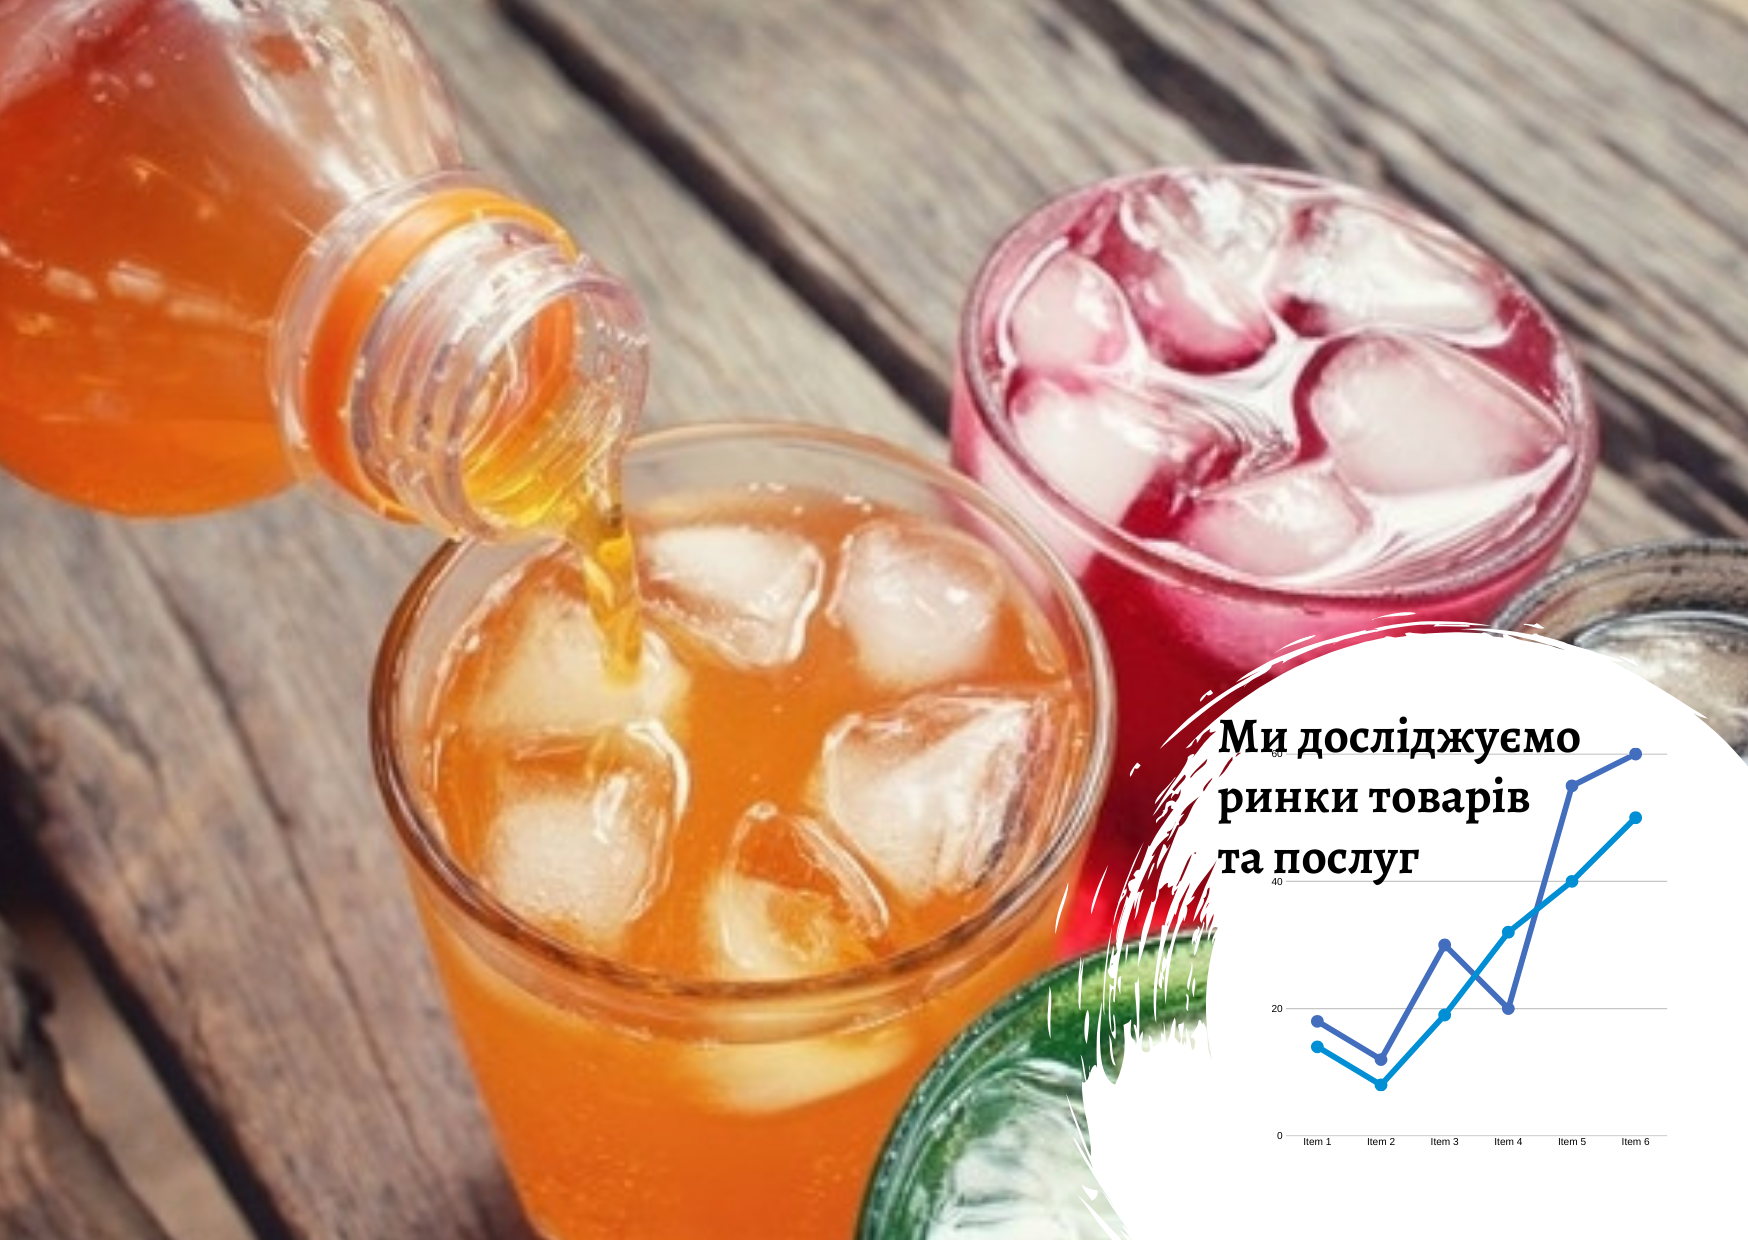 Рынок напитков в Украине: текущее состояние и прогноз на два года 